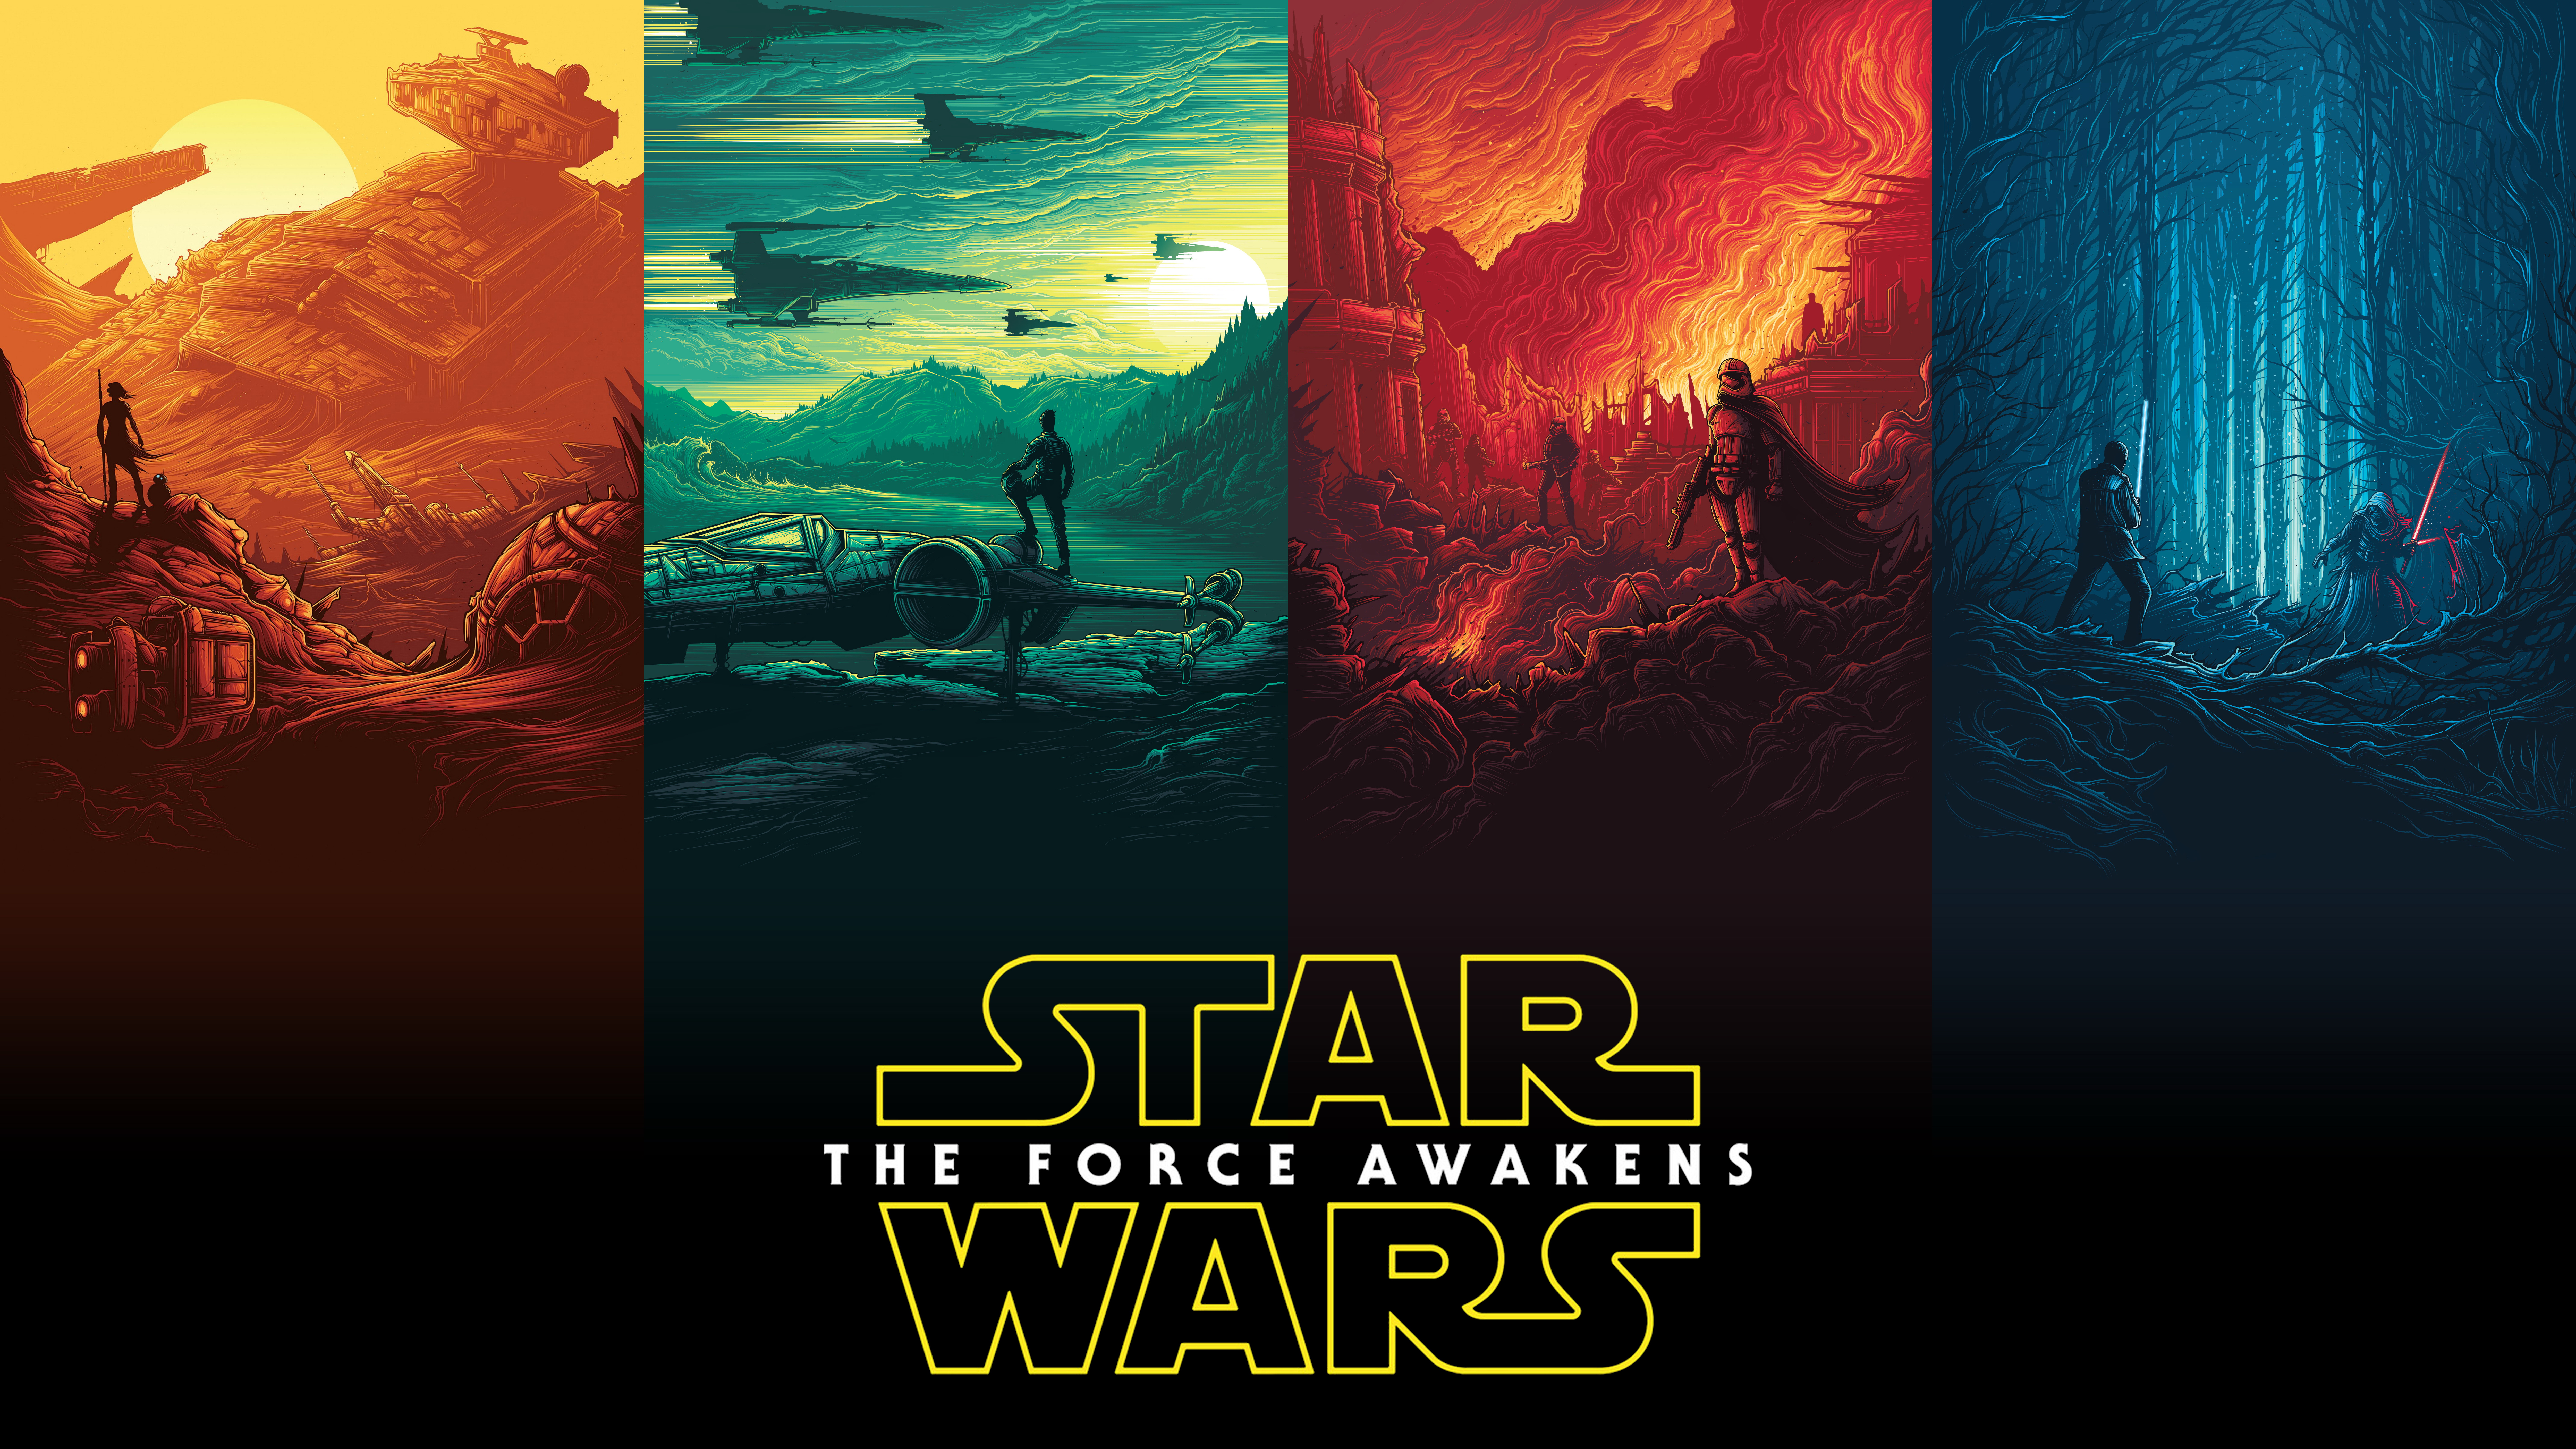 movie, star wars episode vii: the force awakens, captain phasma, kylo ren, star wars